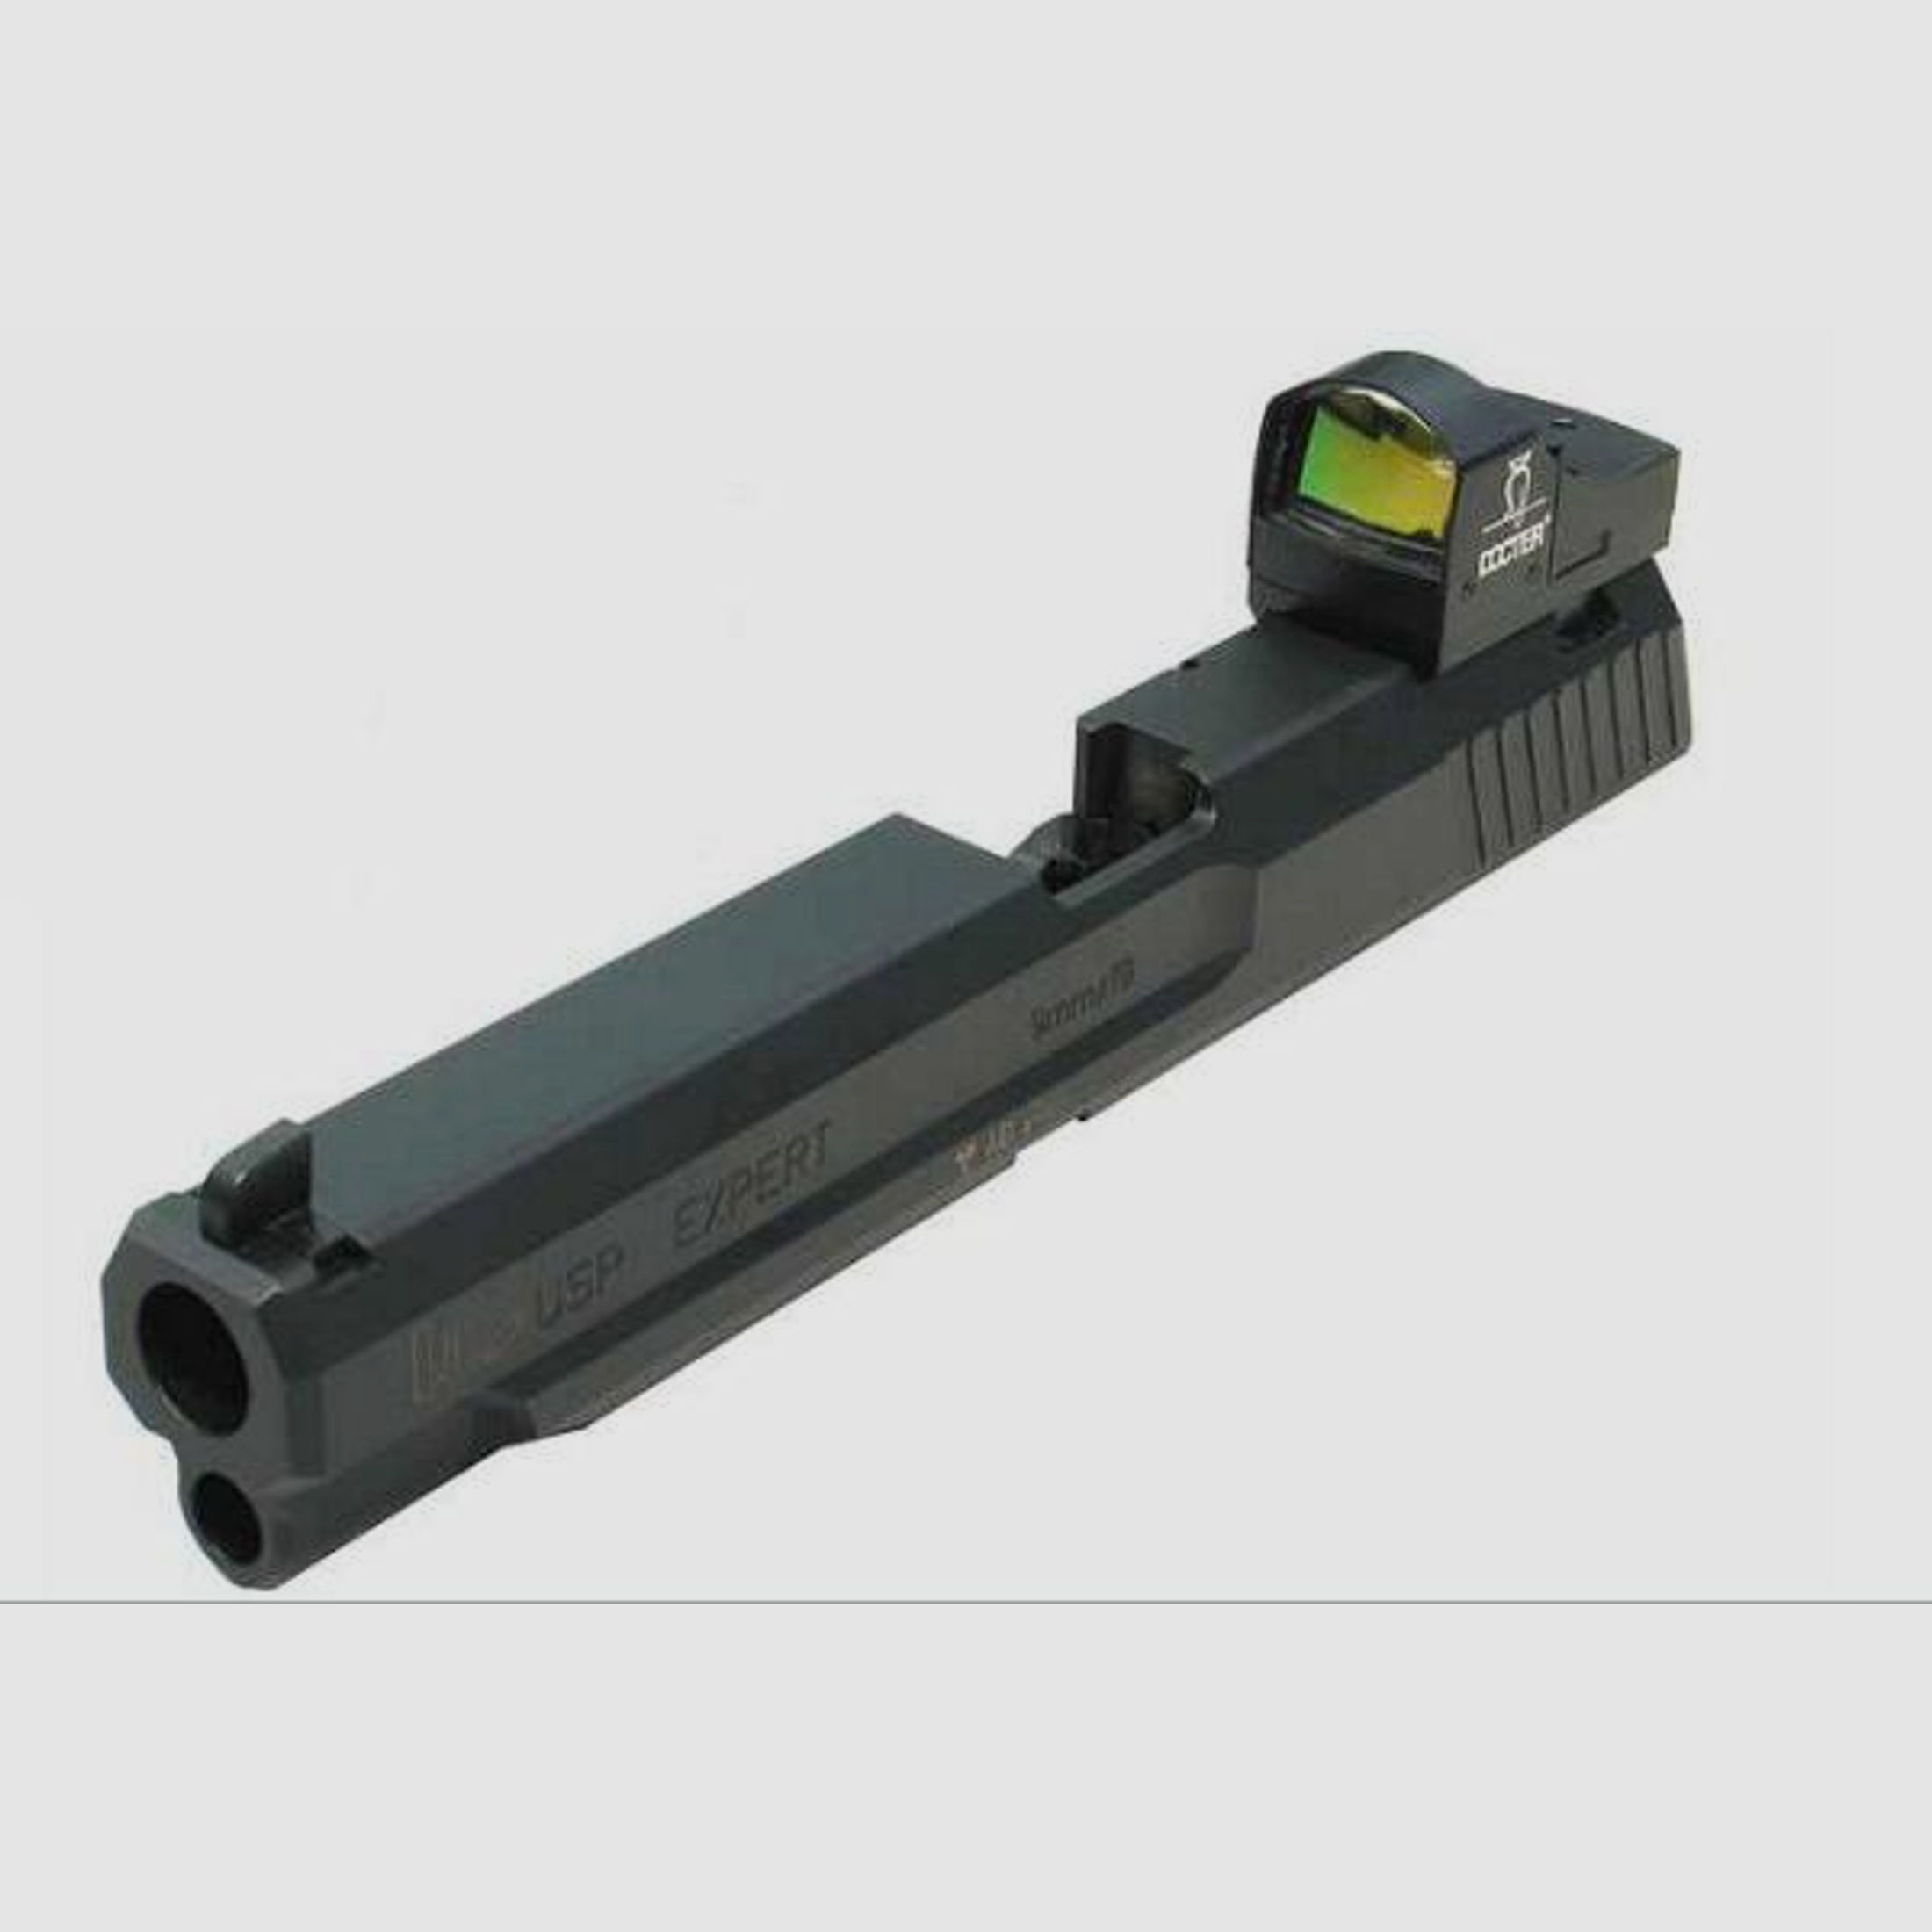 HENNEBERGER Montage f. Leuchtpunktvisier Montageplatte Docter Sight f. Glock  -45Auto/10mm